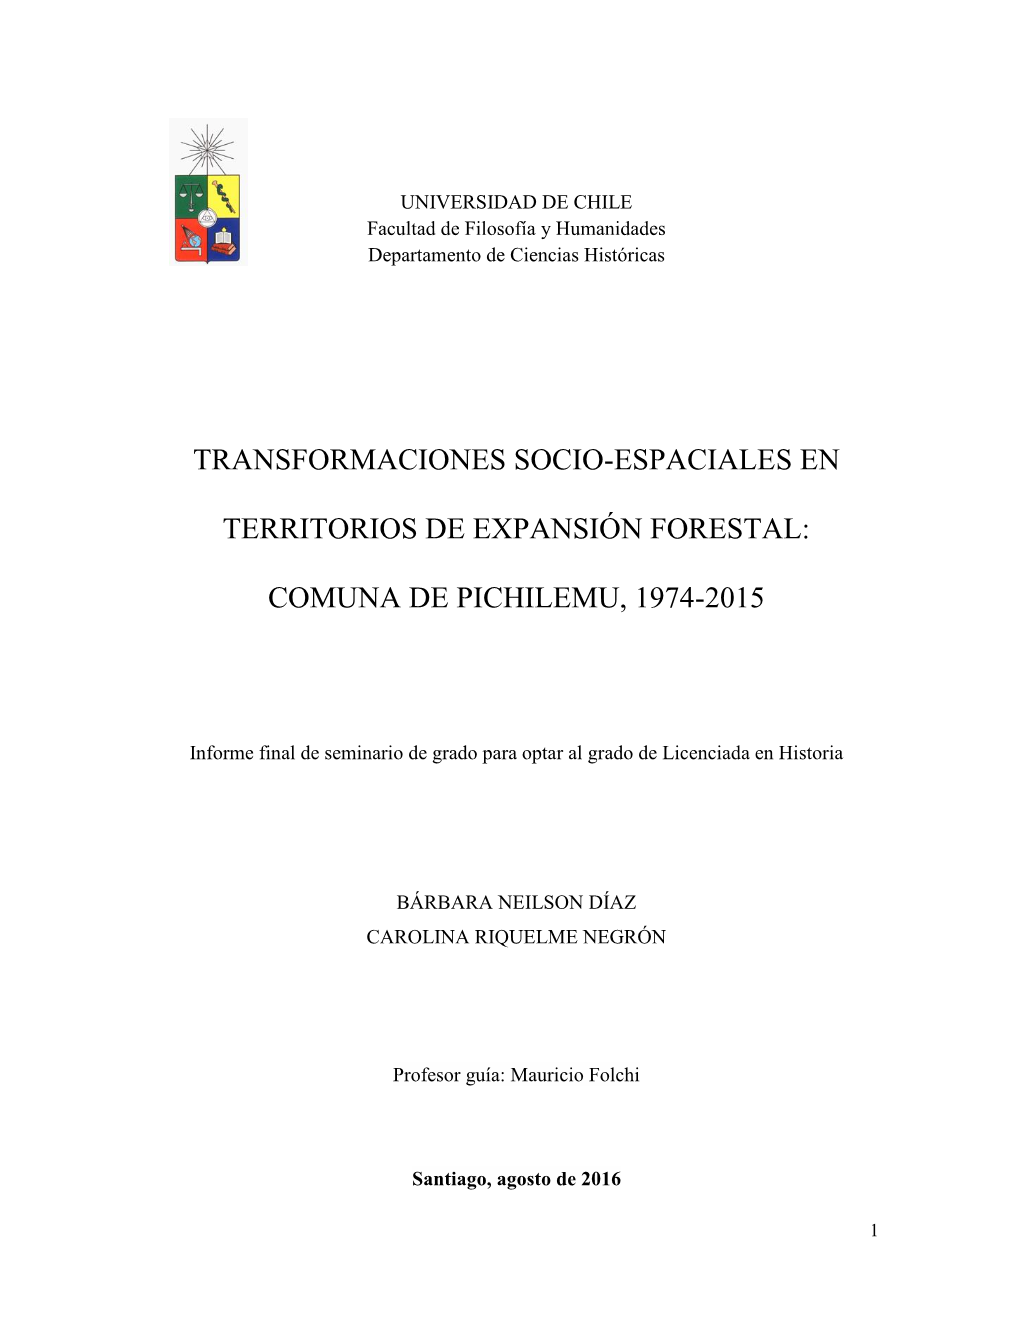 Transformaciones Socio-Espaciales En Territorios De Expansión Forestal: Comuna De Pichilemu, 1974-2015